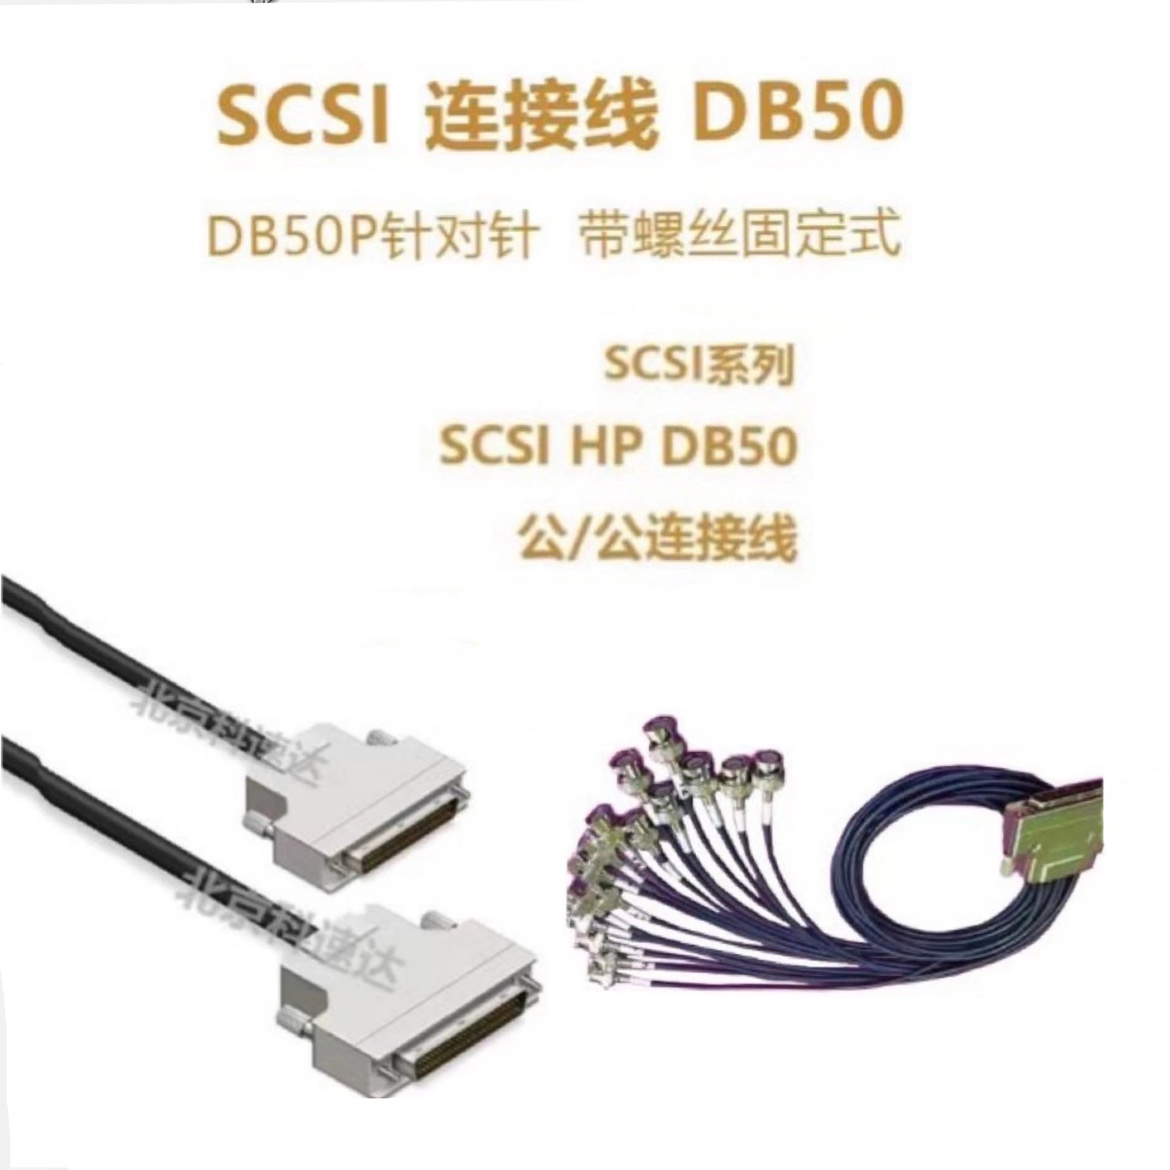 SCSI连接线DB50针对针 SCSI连接线DB50针对针1m/1.5m/3m/5m